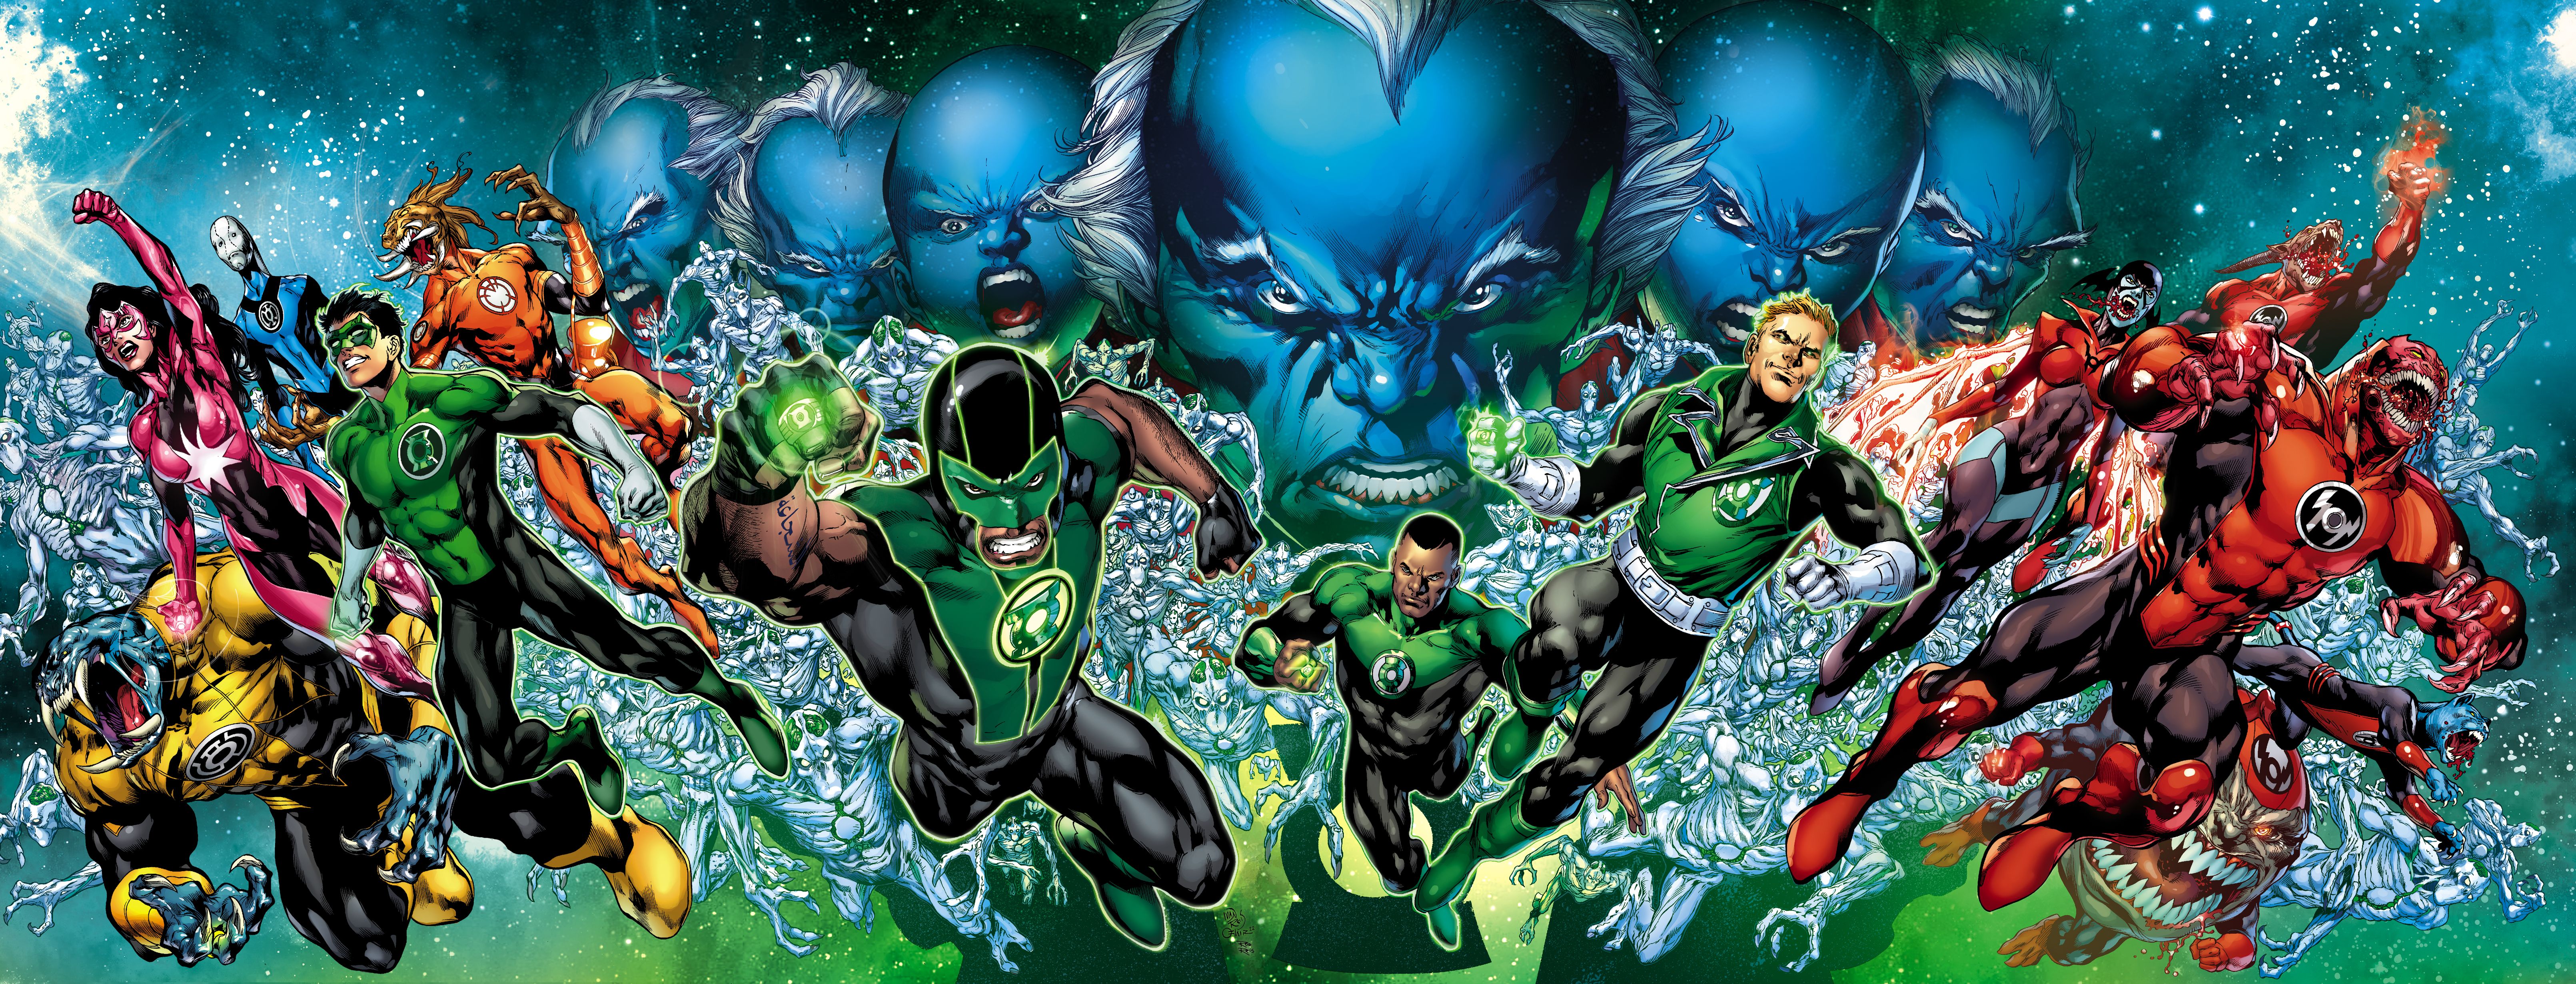 DCEU Green Lantern Corps Wallpaper by Daviddv1202 on DeviantArt